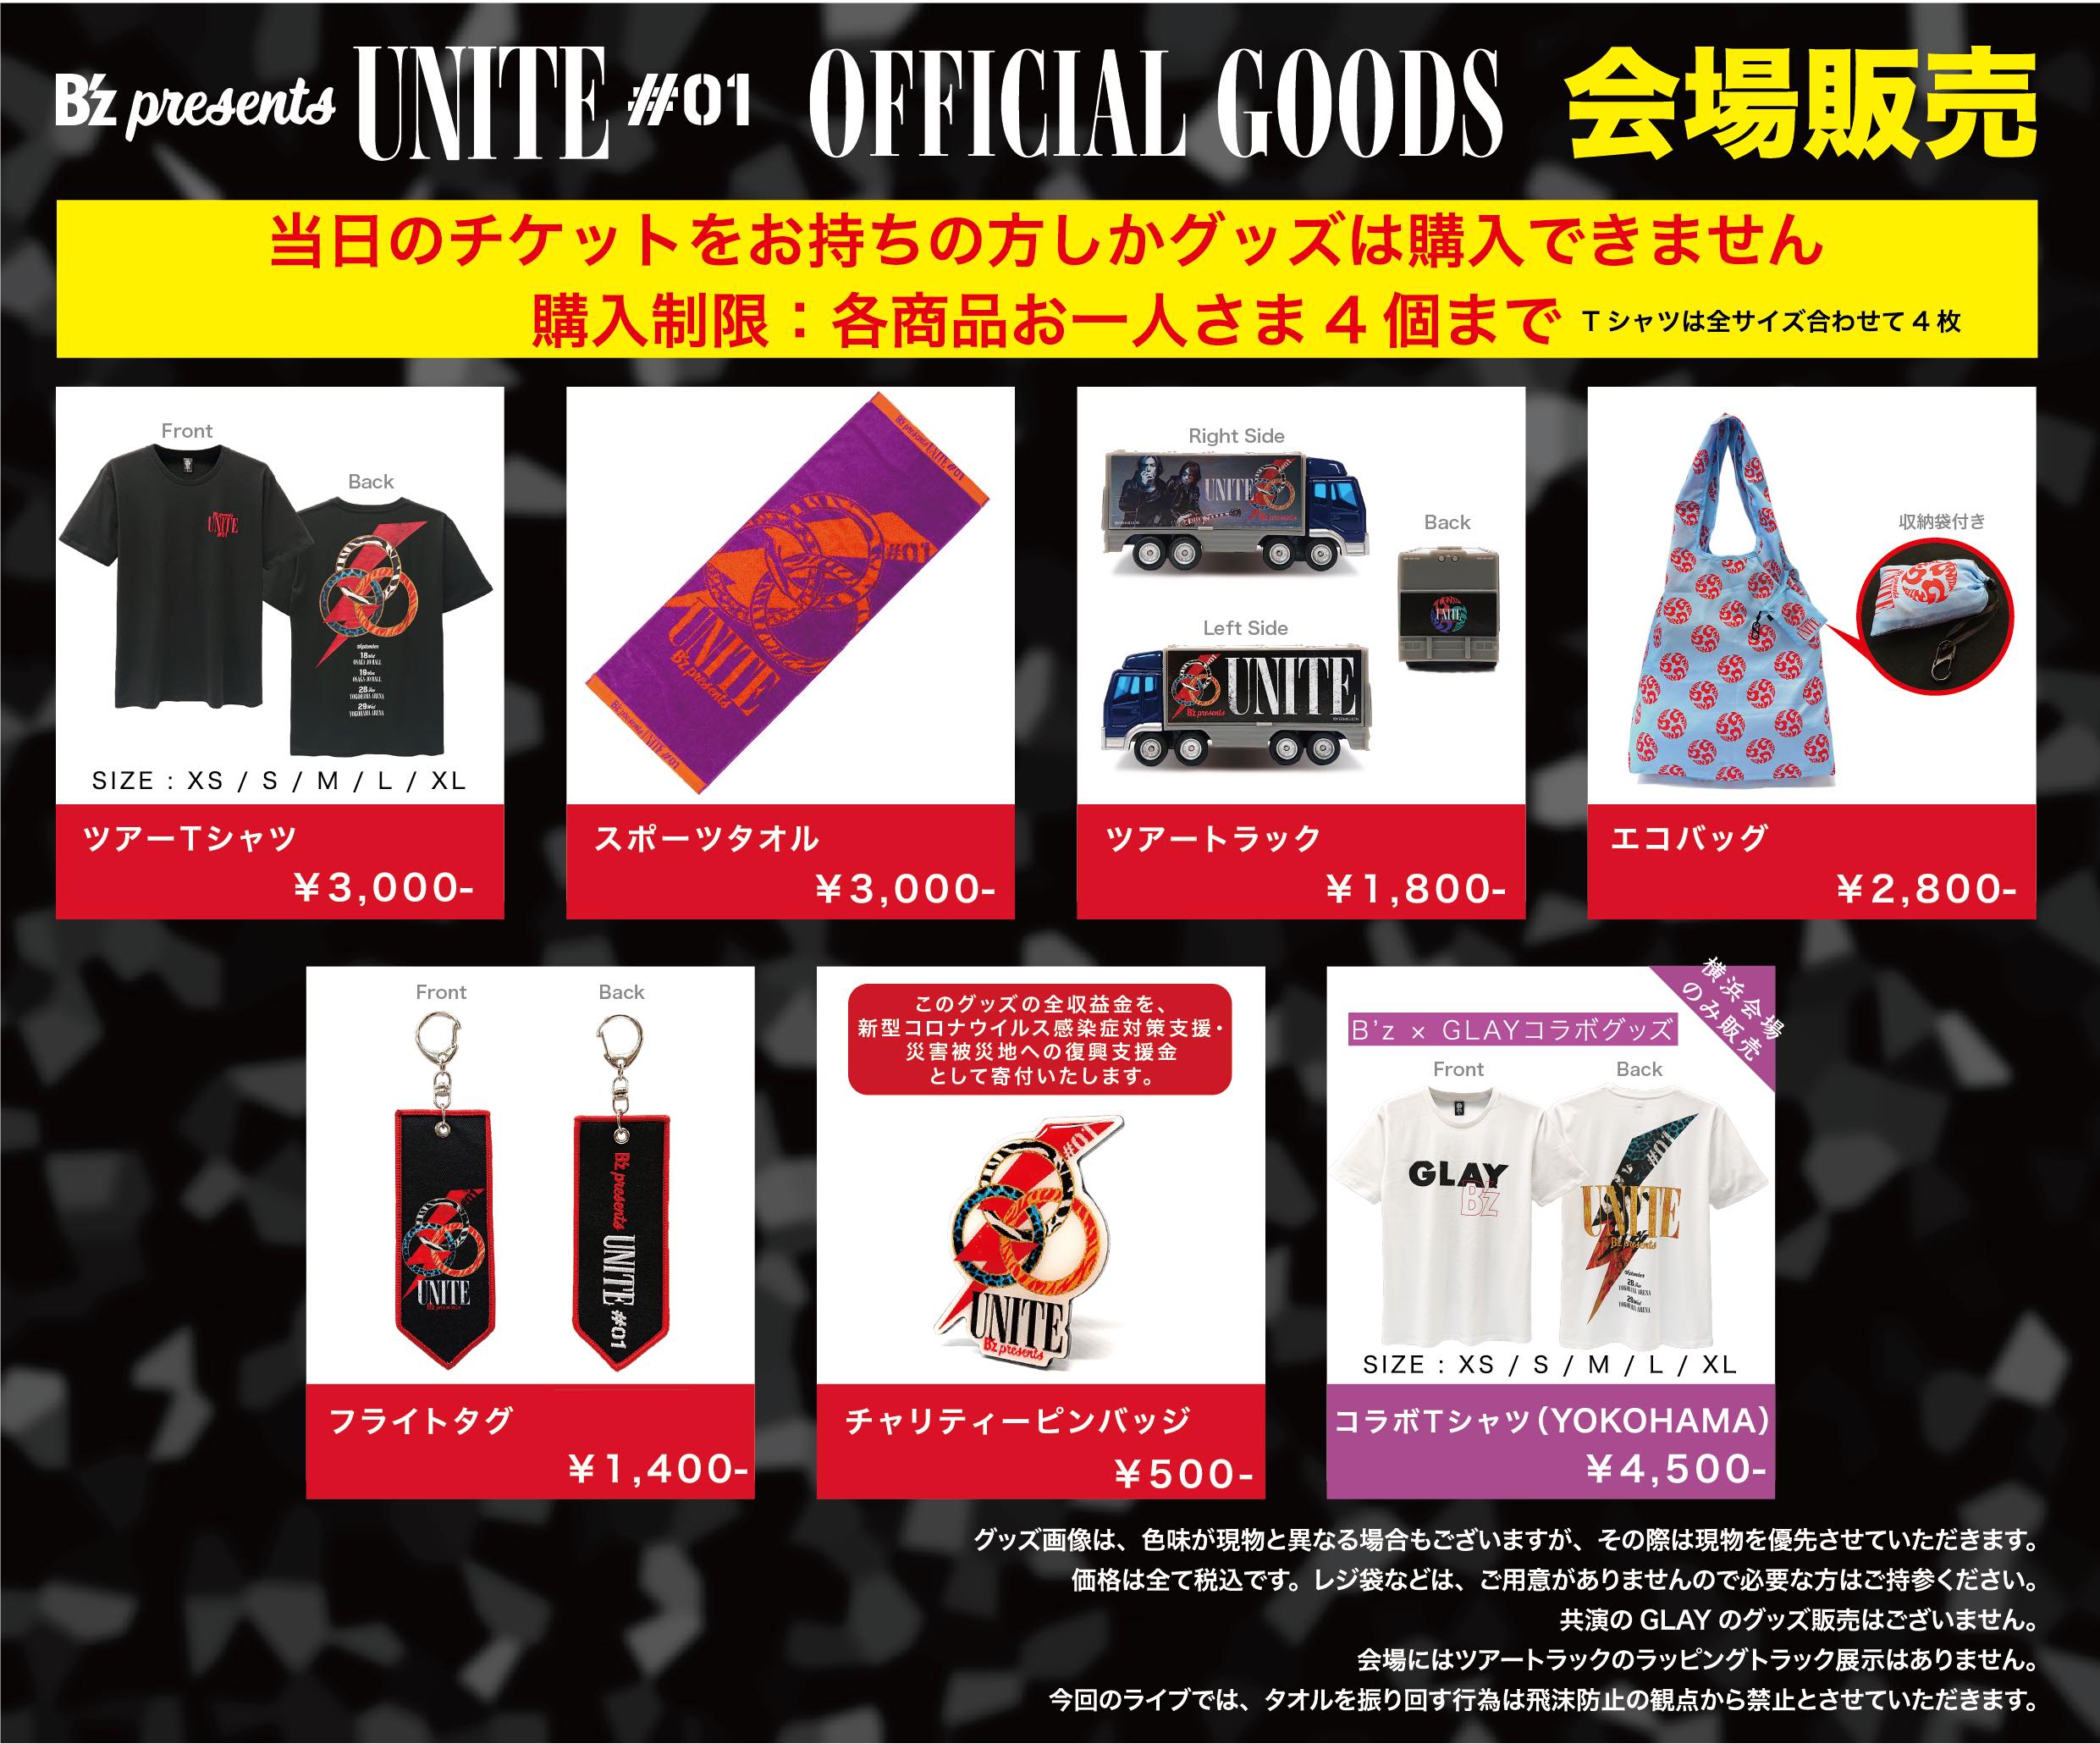 B'z×GLAY『UNITE』横浜公演のグッズ販売開始は11時30分から予定 | 超 